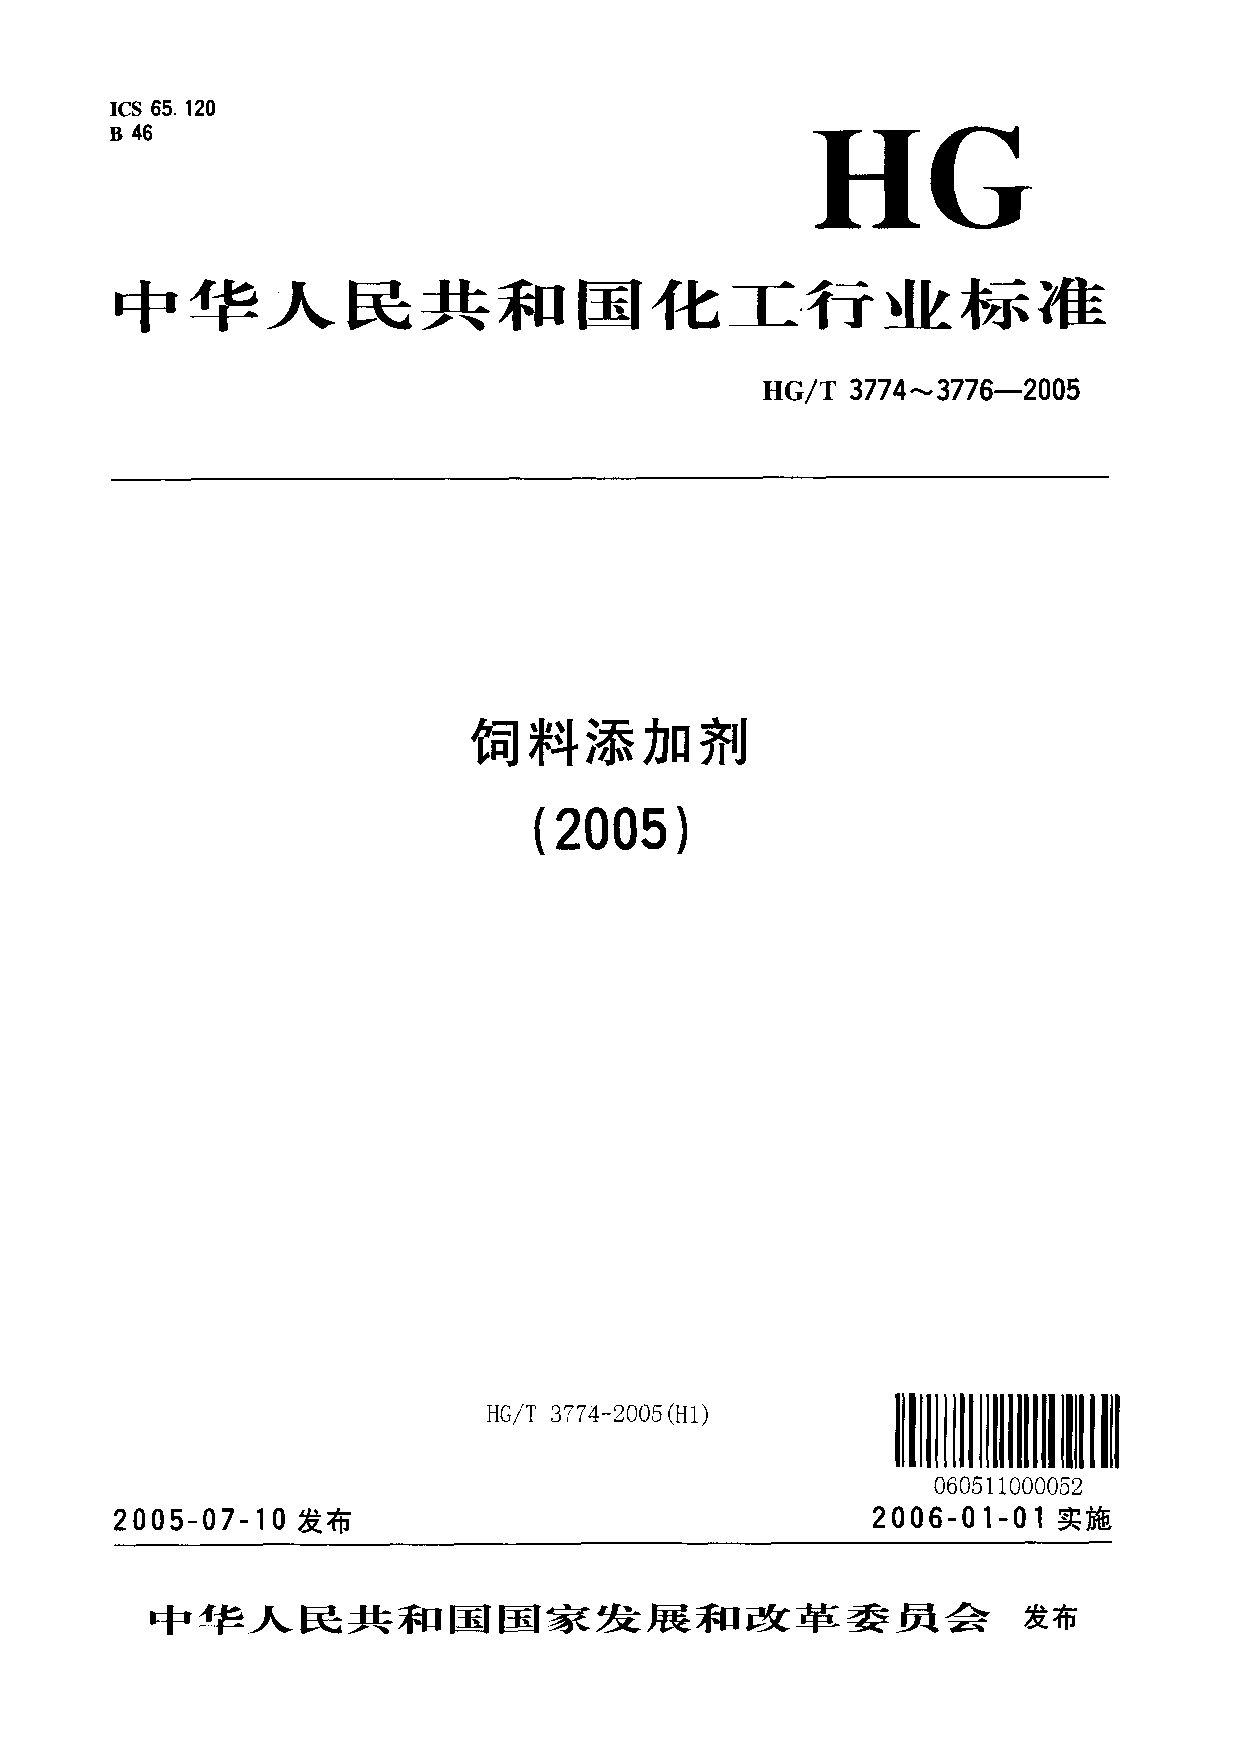 HG/T 3776-2005封面图